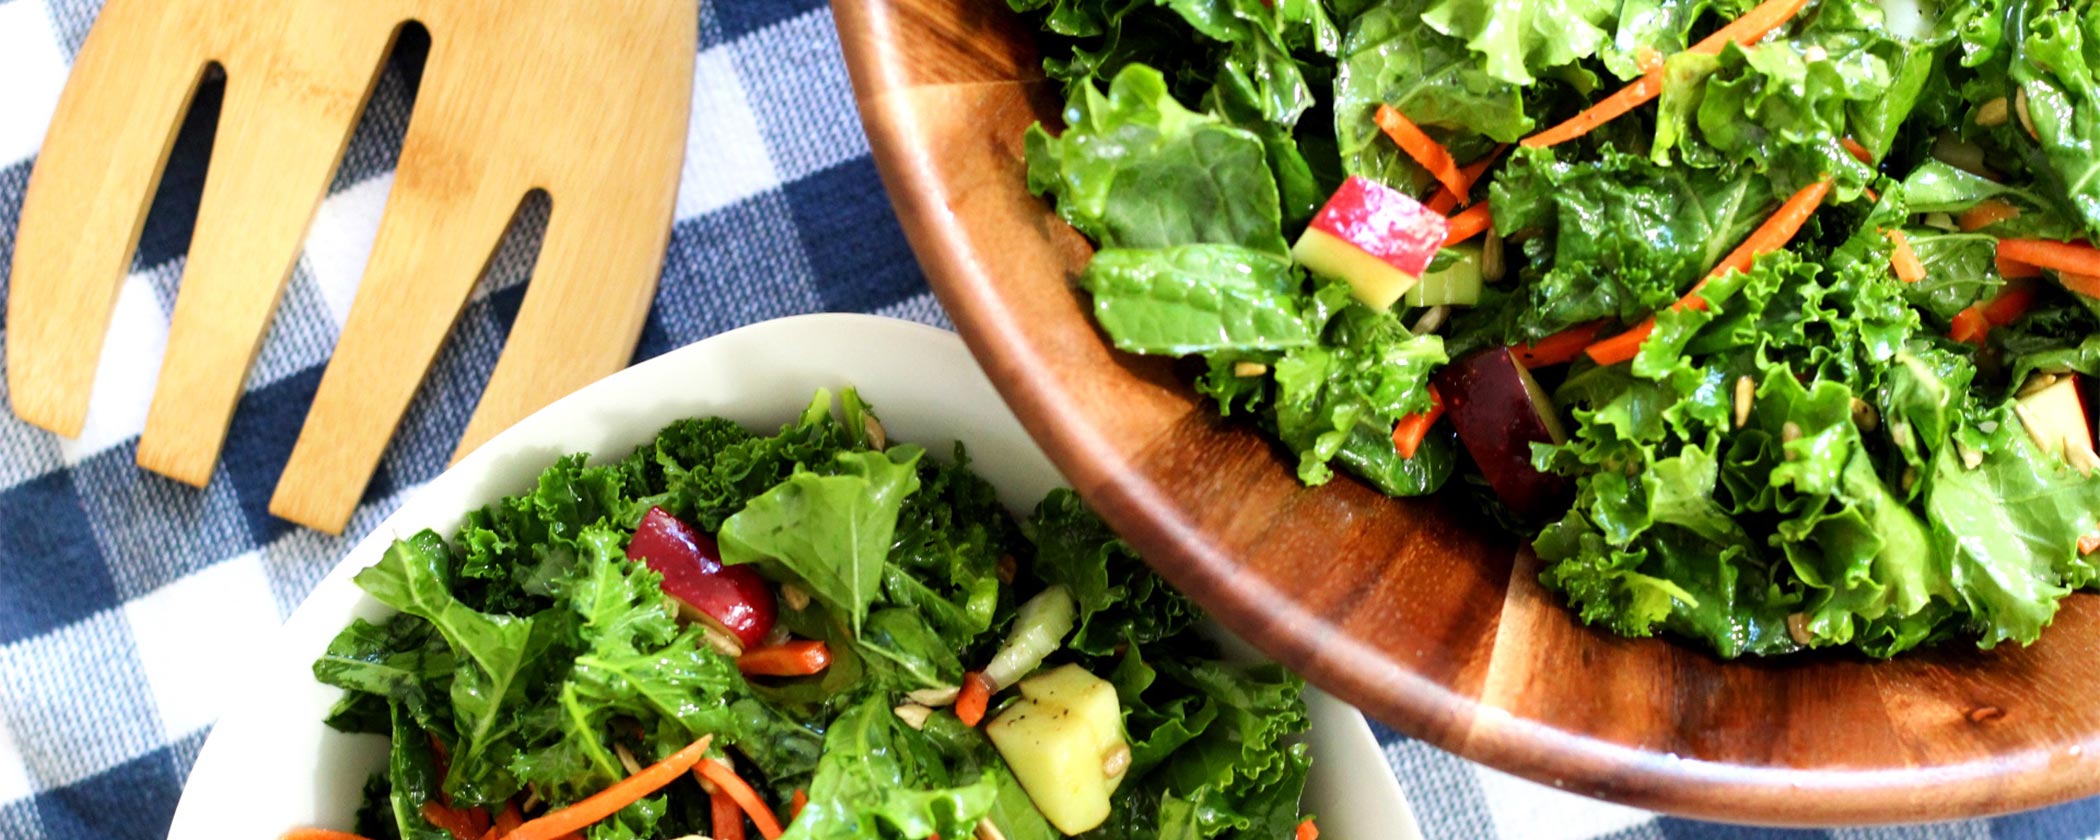 massaged kale salad in a wooden salad bowl